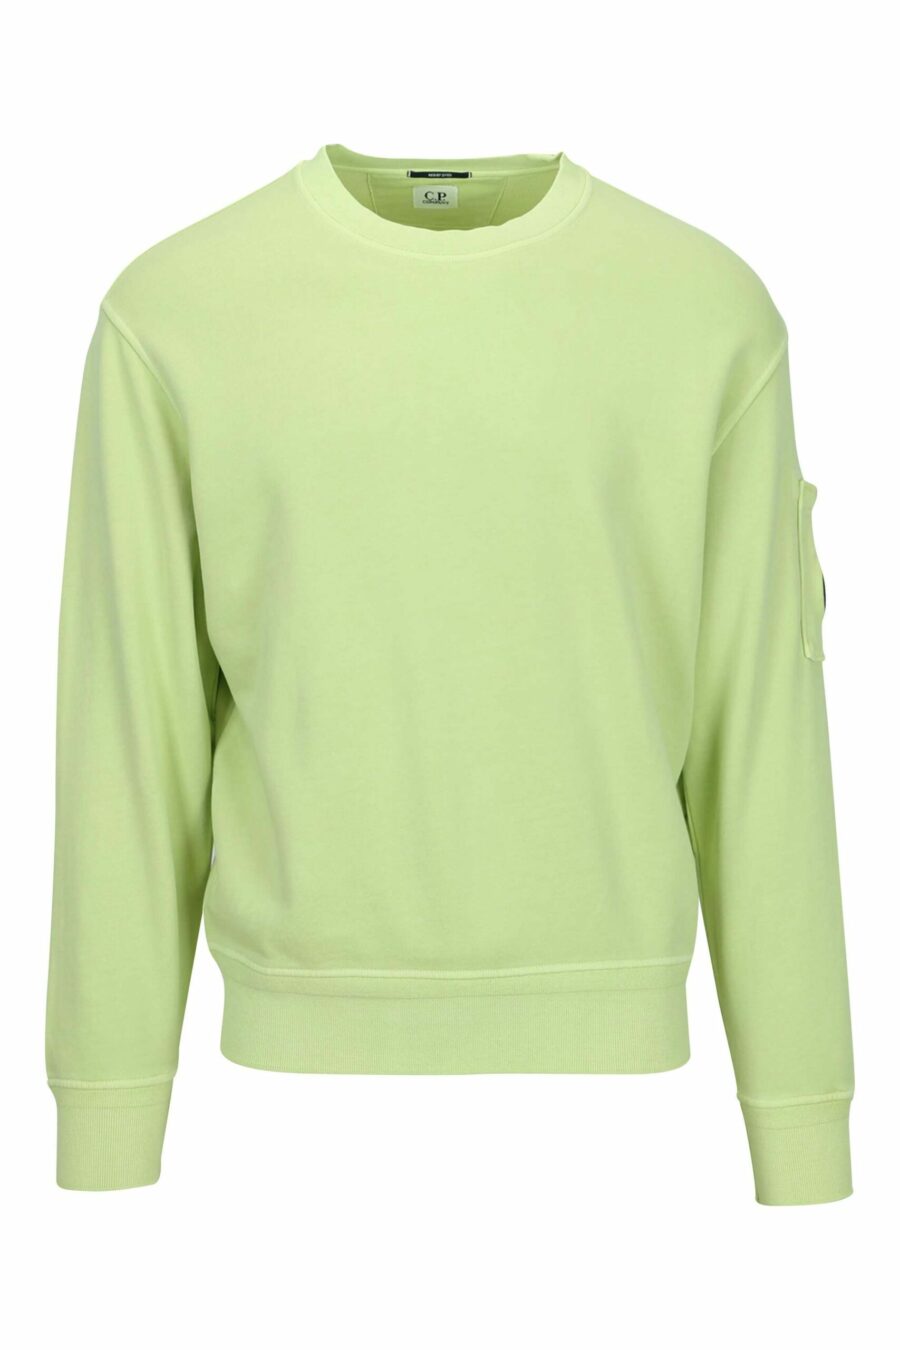 Camisola verde-clara com bolso e lente com mini-logotipo - 7620943751833 scaled